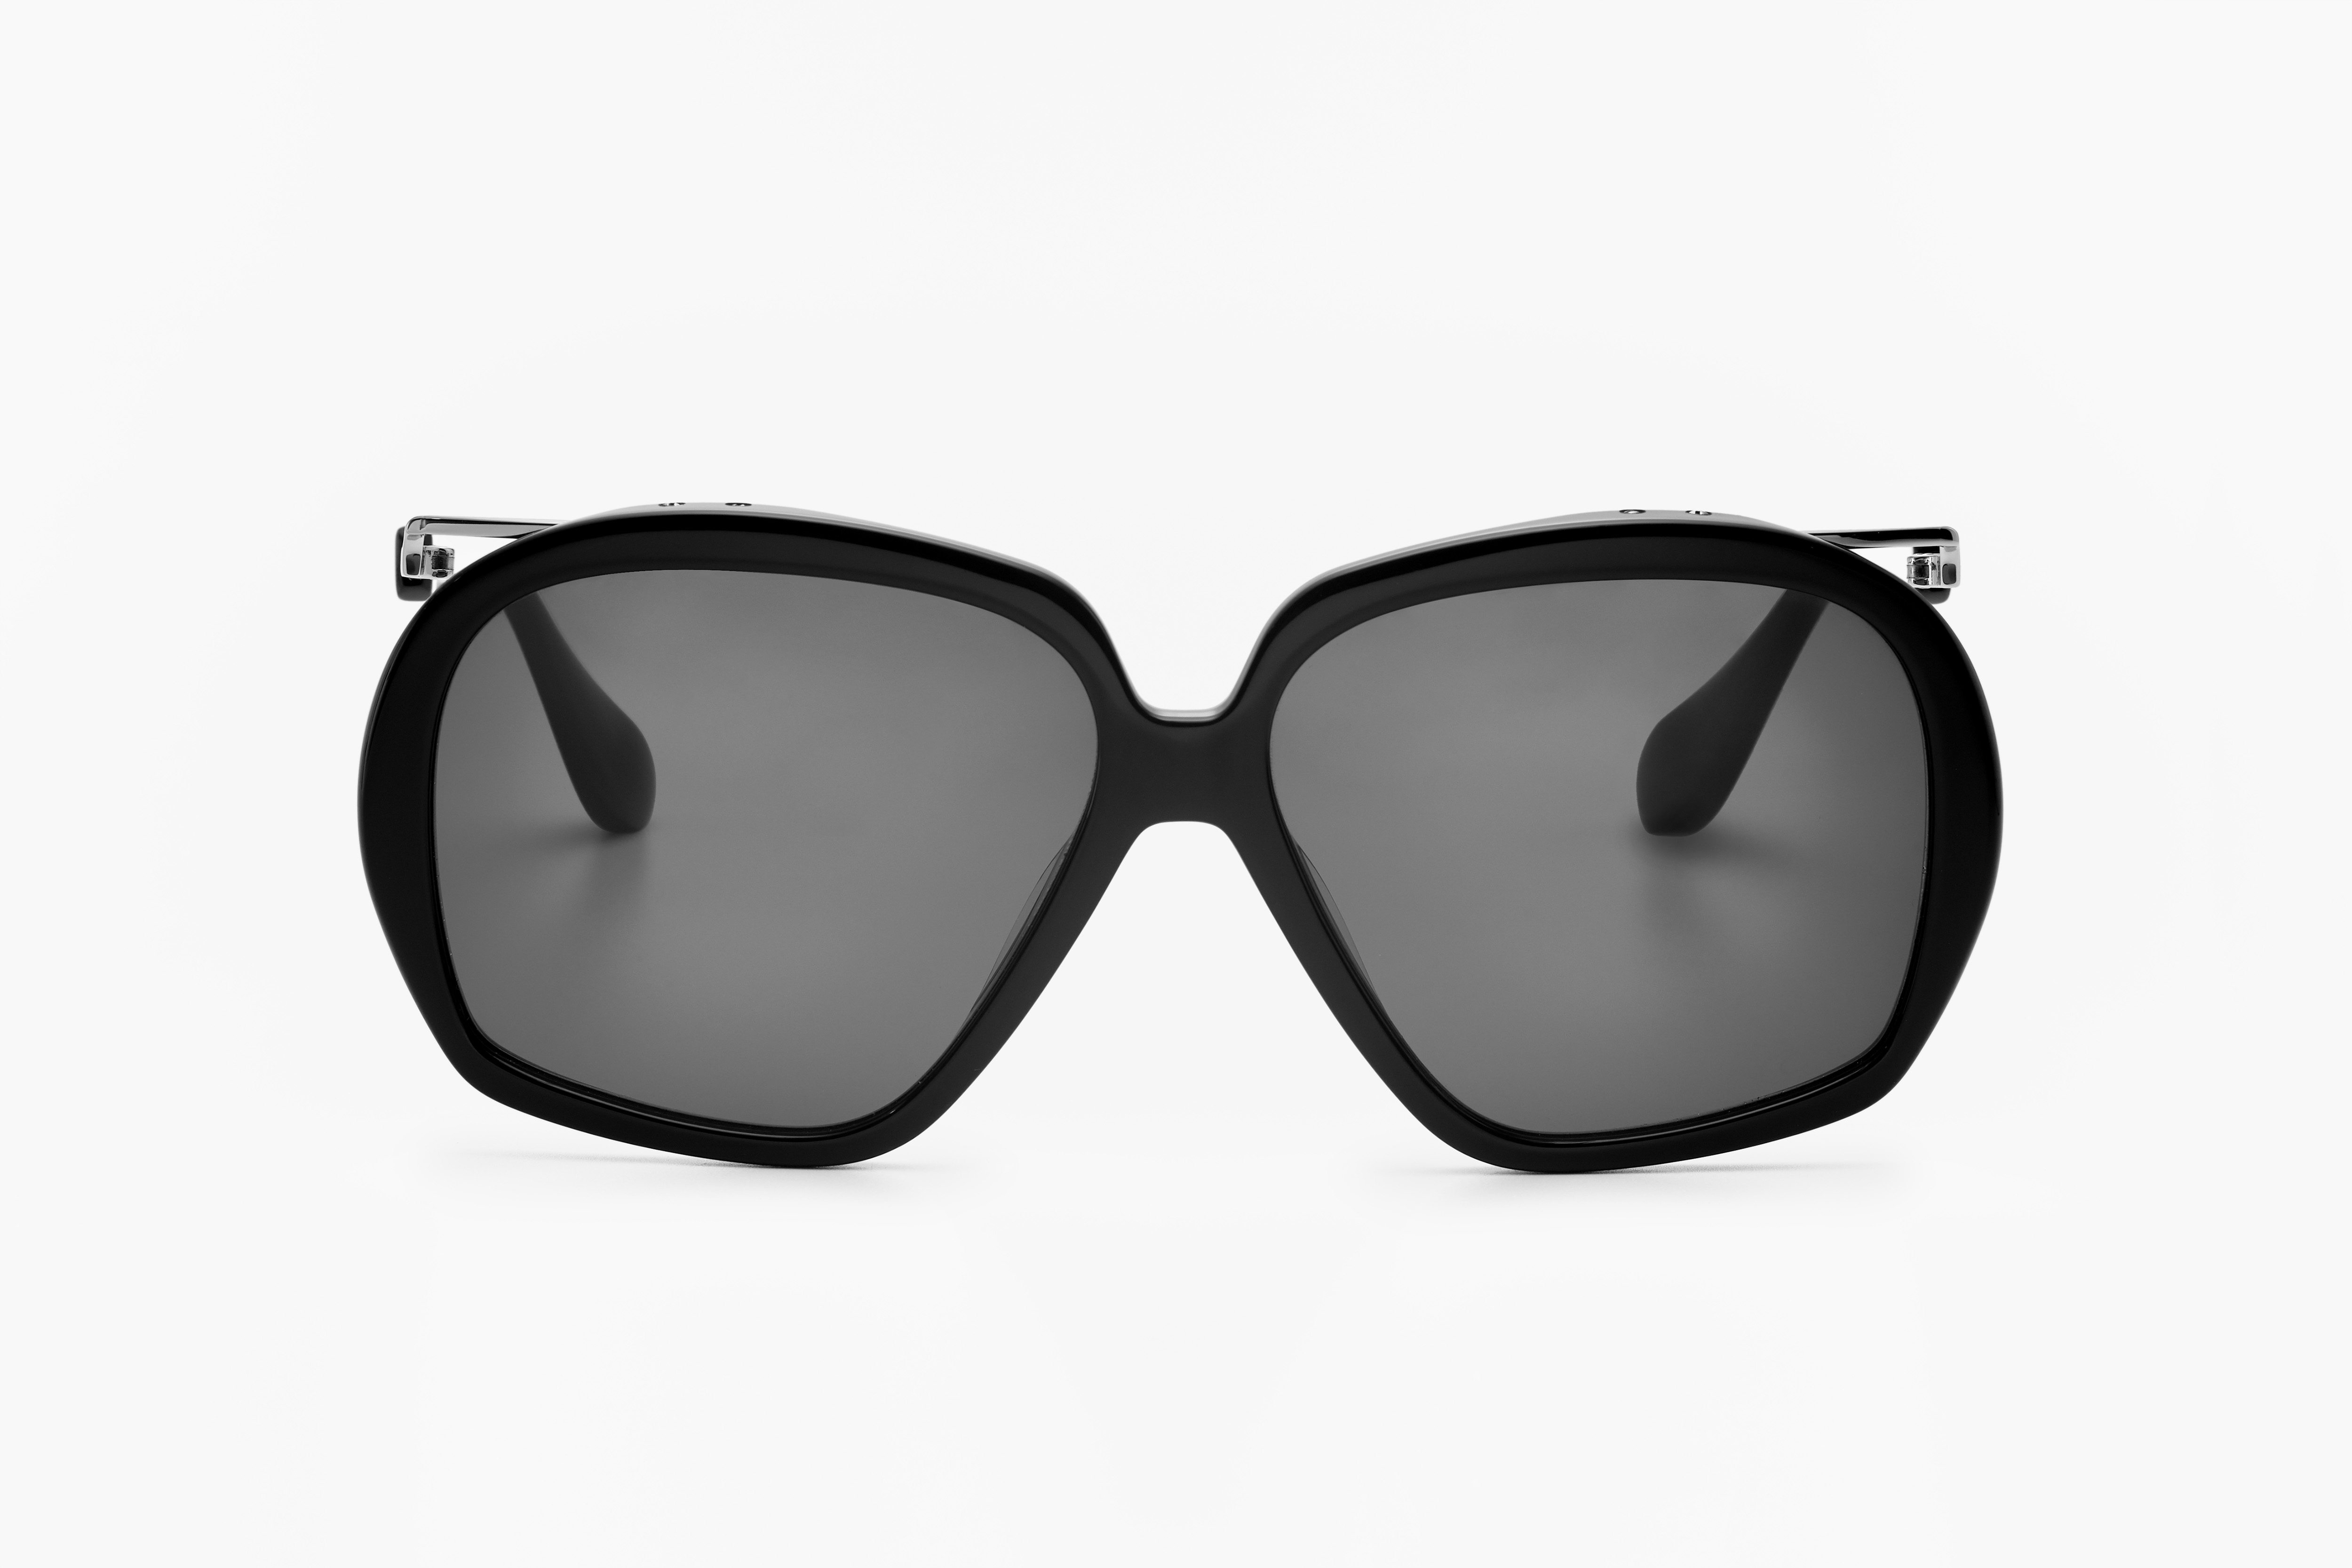 CHLOE官网圆框太阳镜 名牌太阳眼镜图片 高仿太阳眼镜货源 - 七七奢侈品